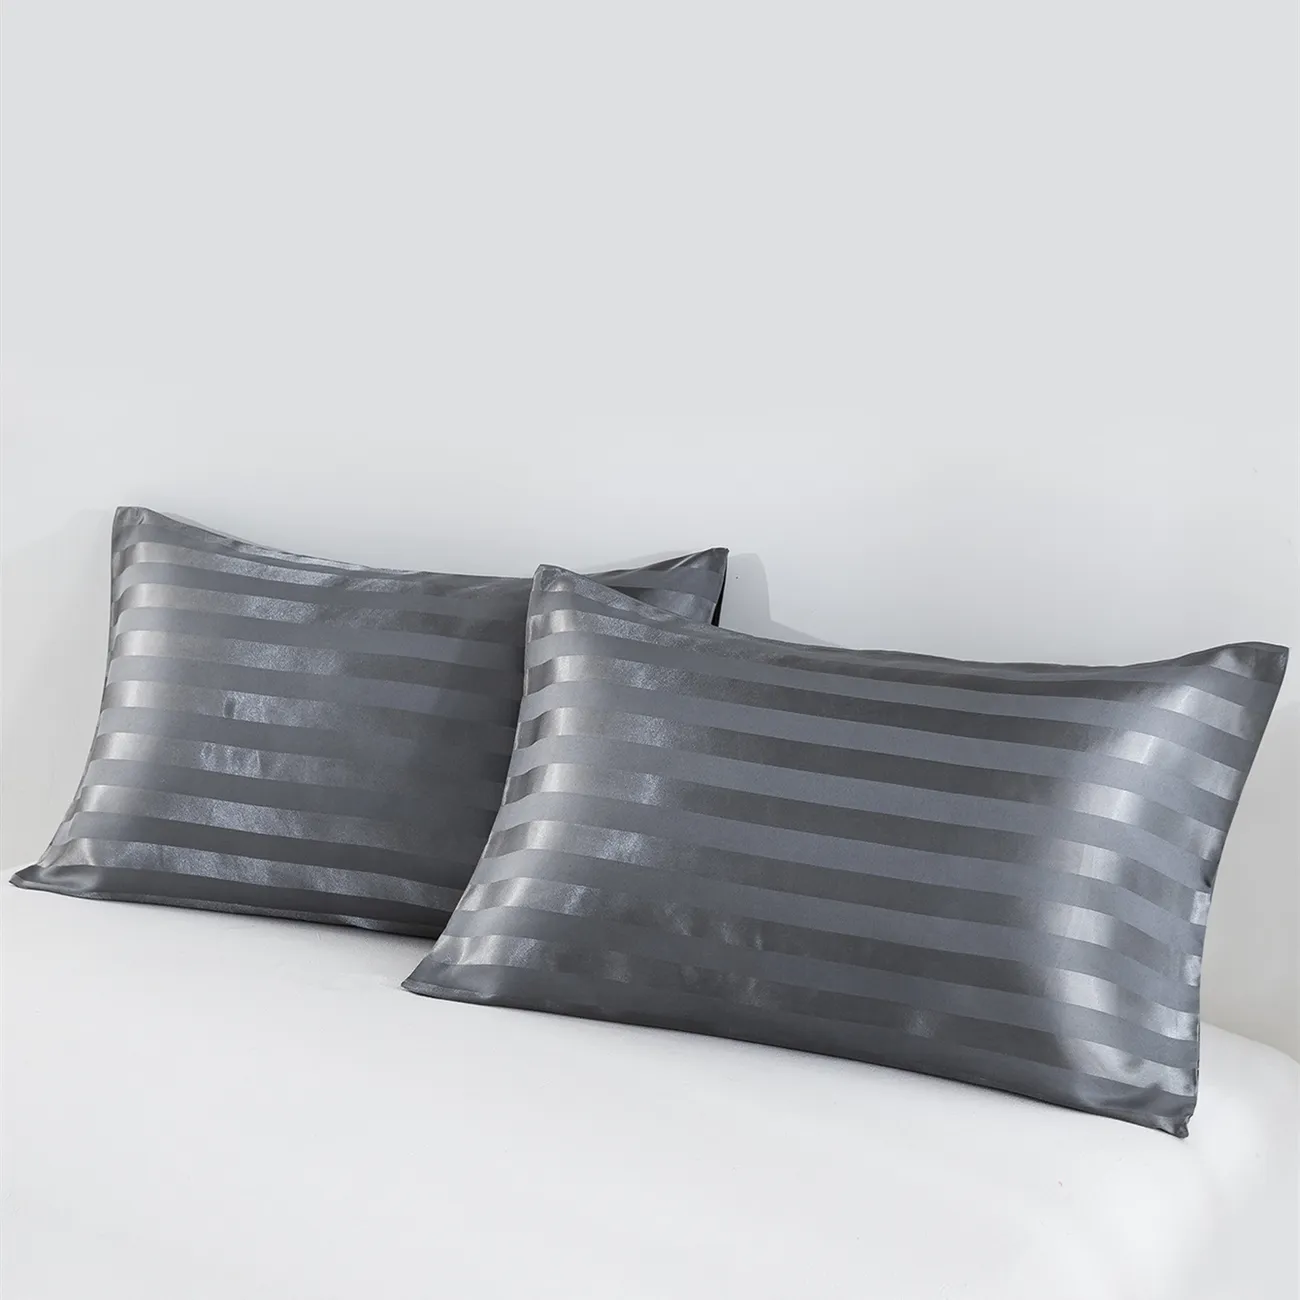 2 Stück zurückhaltende Luxus-Kissenbezüge aus festem Satin in 4 Größen für Bettwäsche grau big image 1